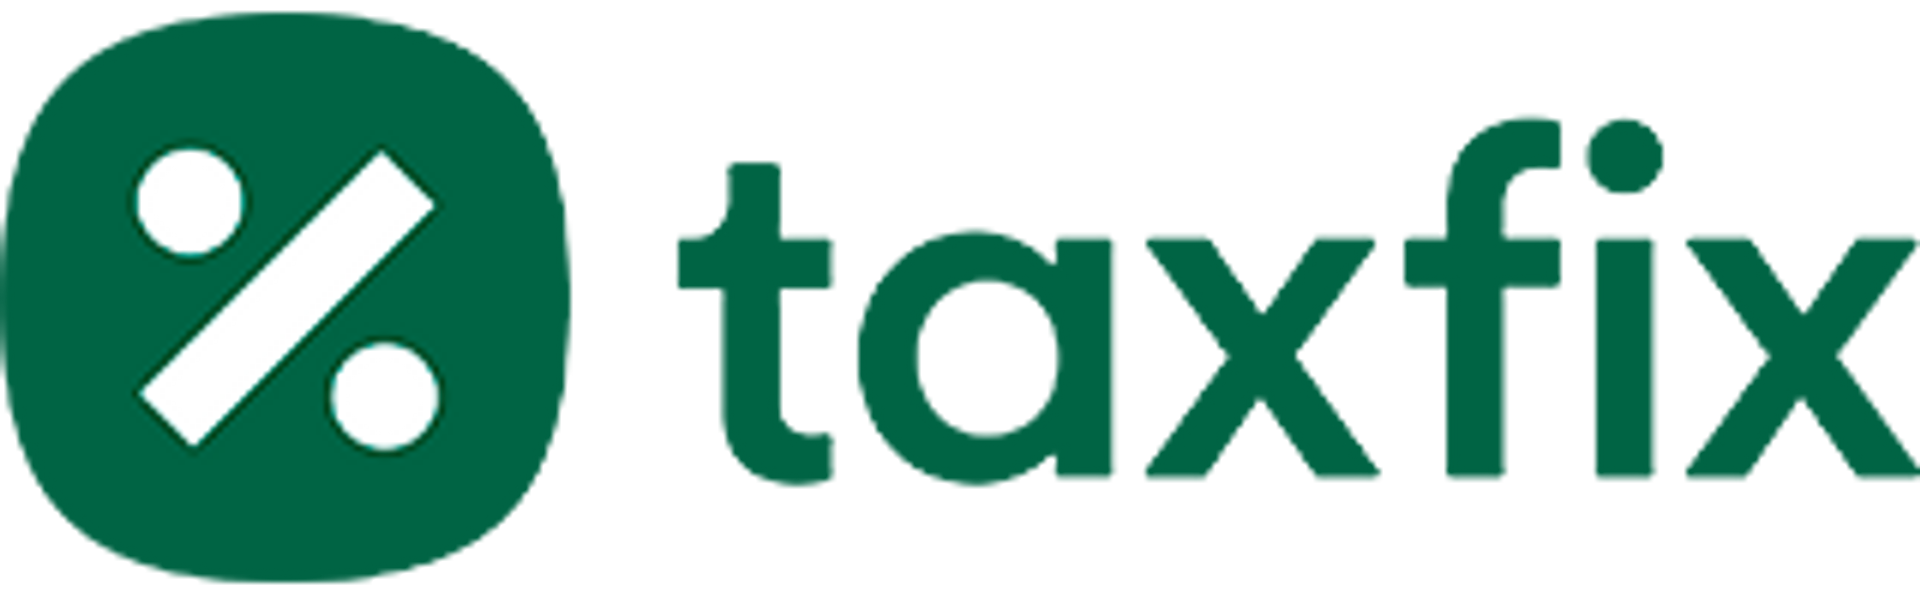 Taxfix